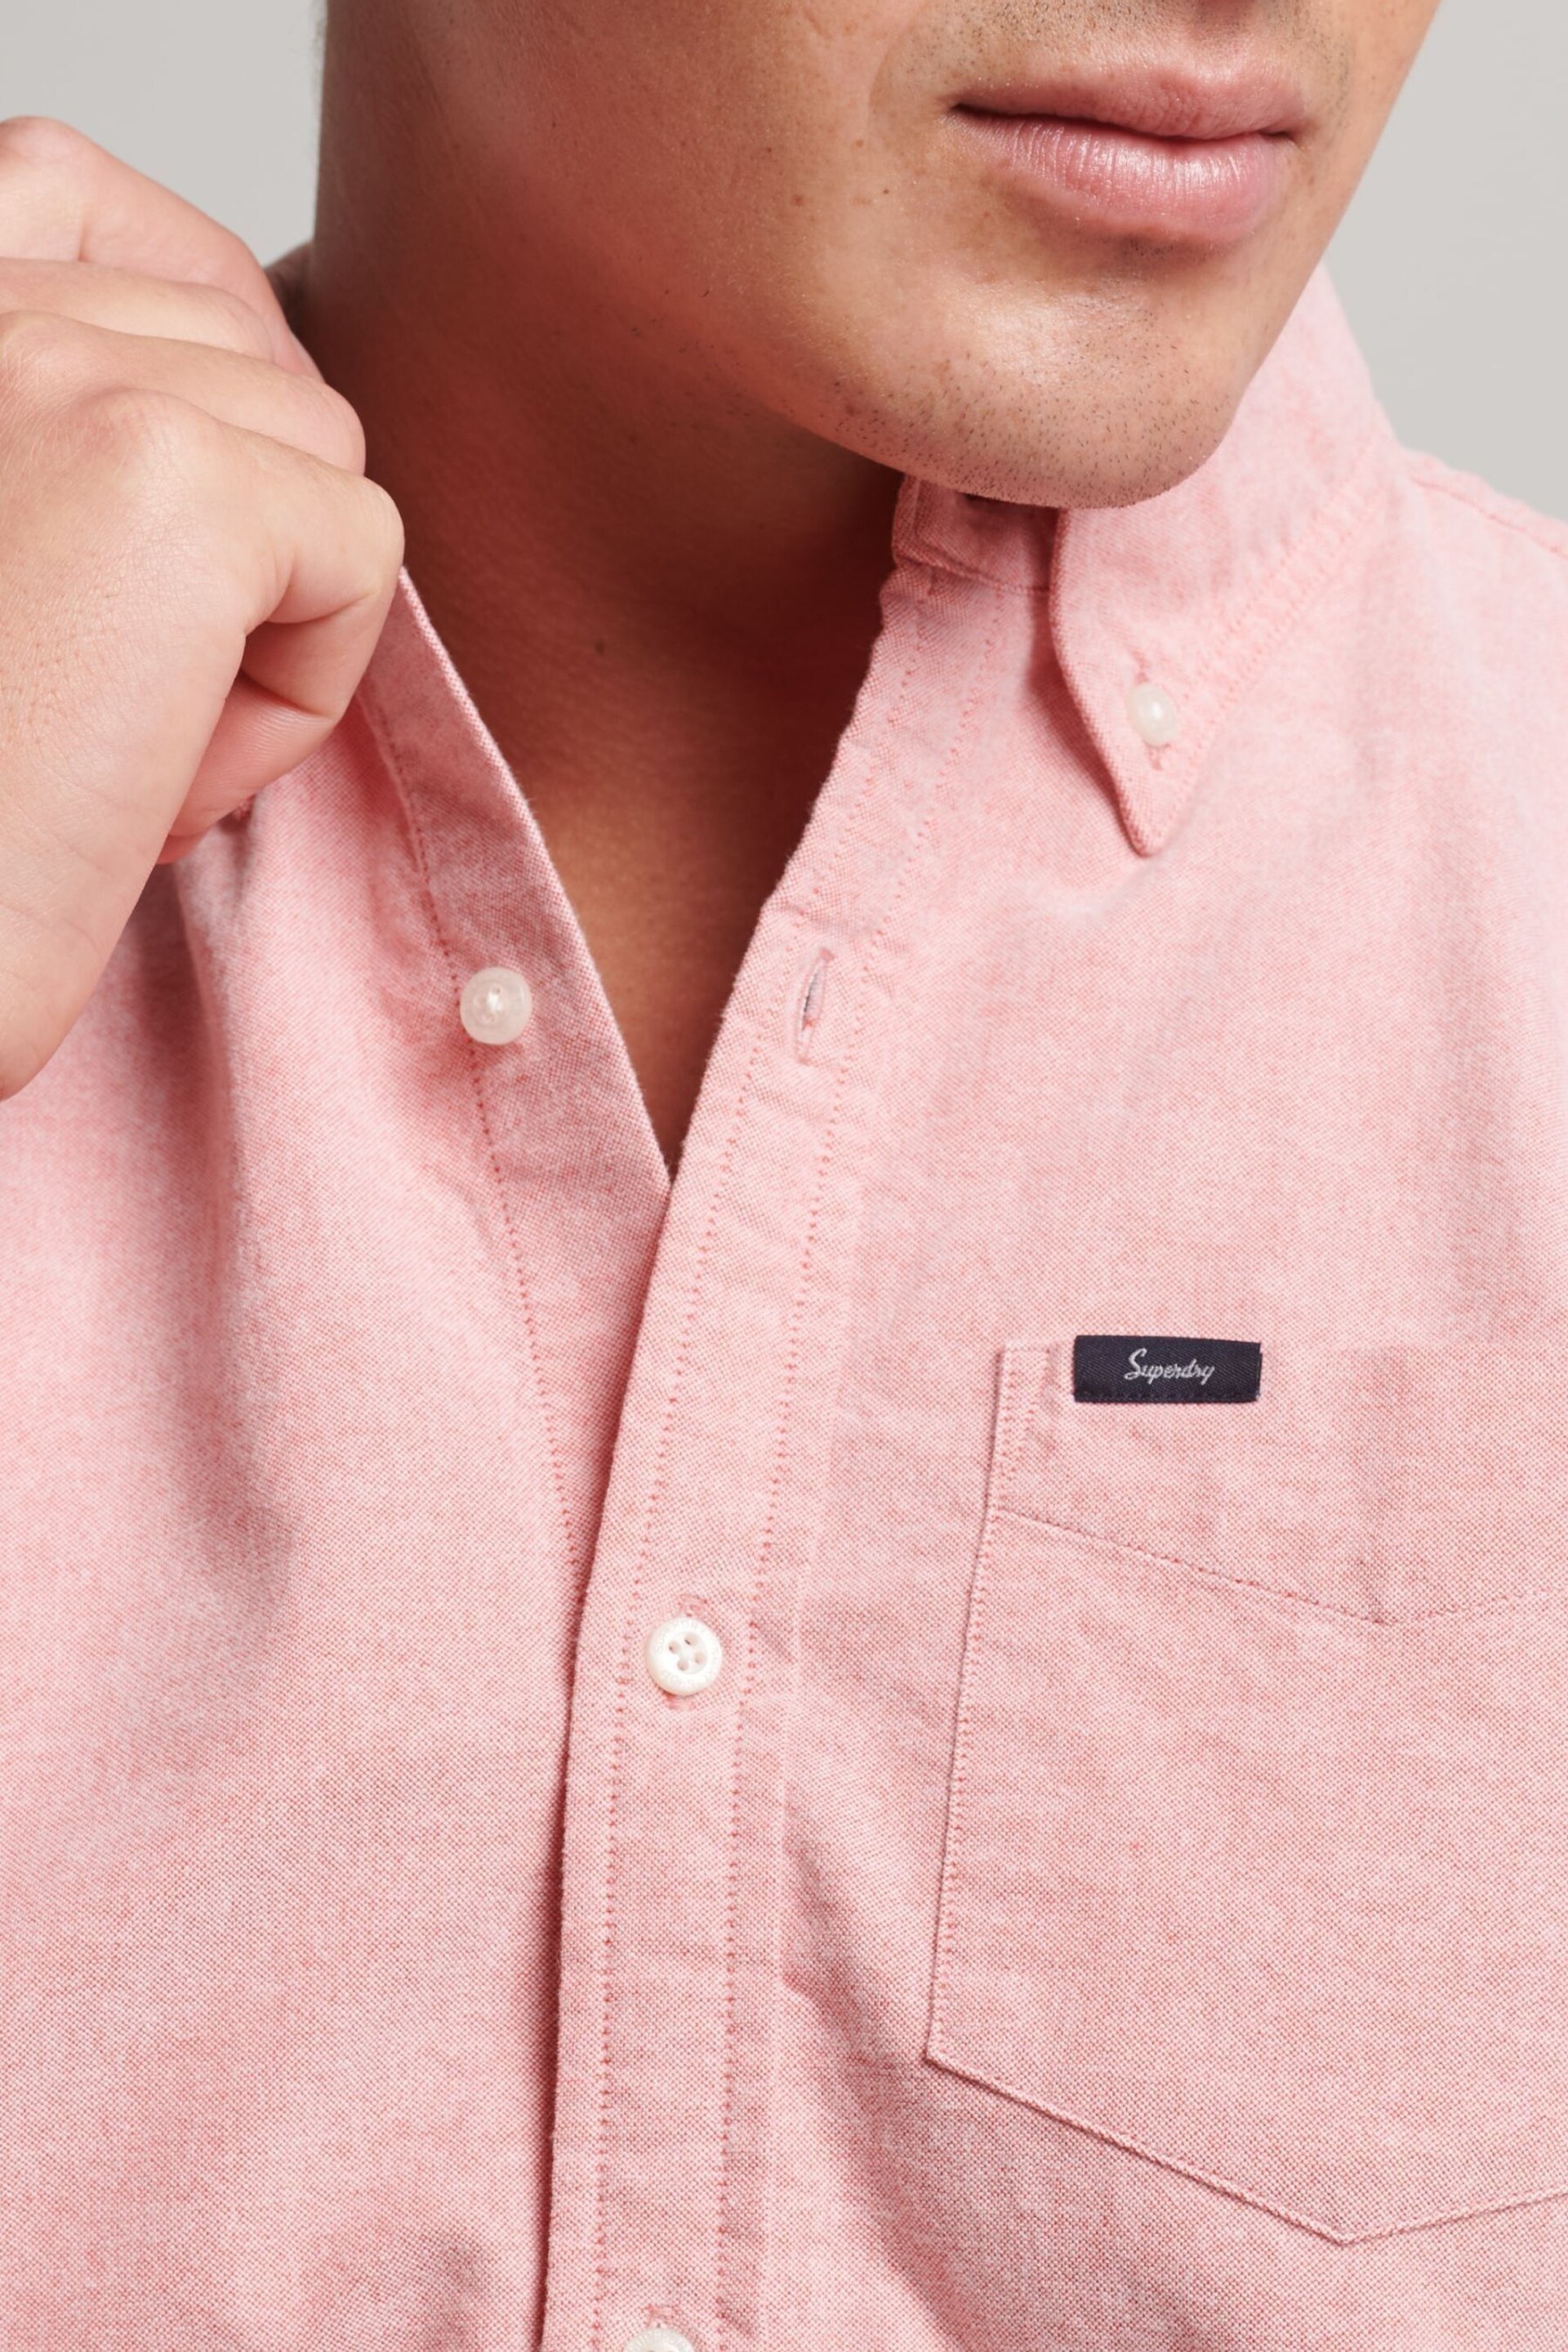 Superdry Pink Vintage Oxford Short Sleeve Shirt - Image 5 of 8